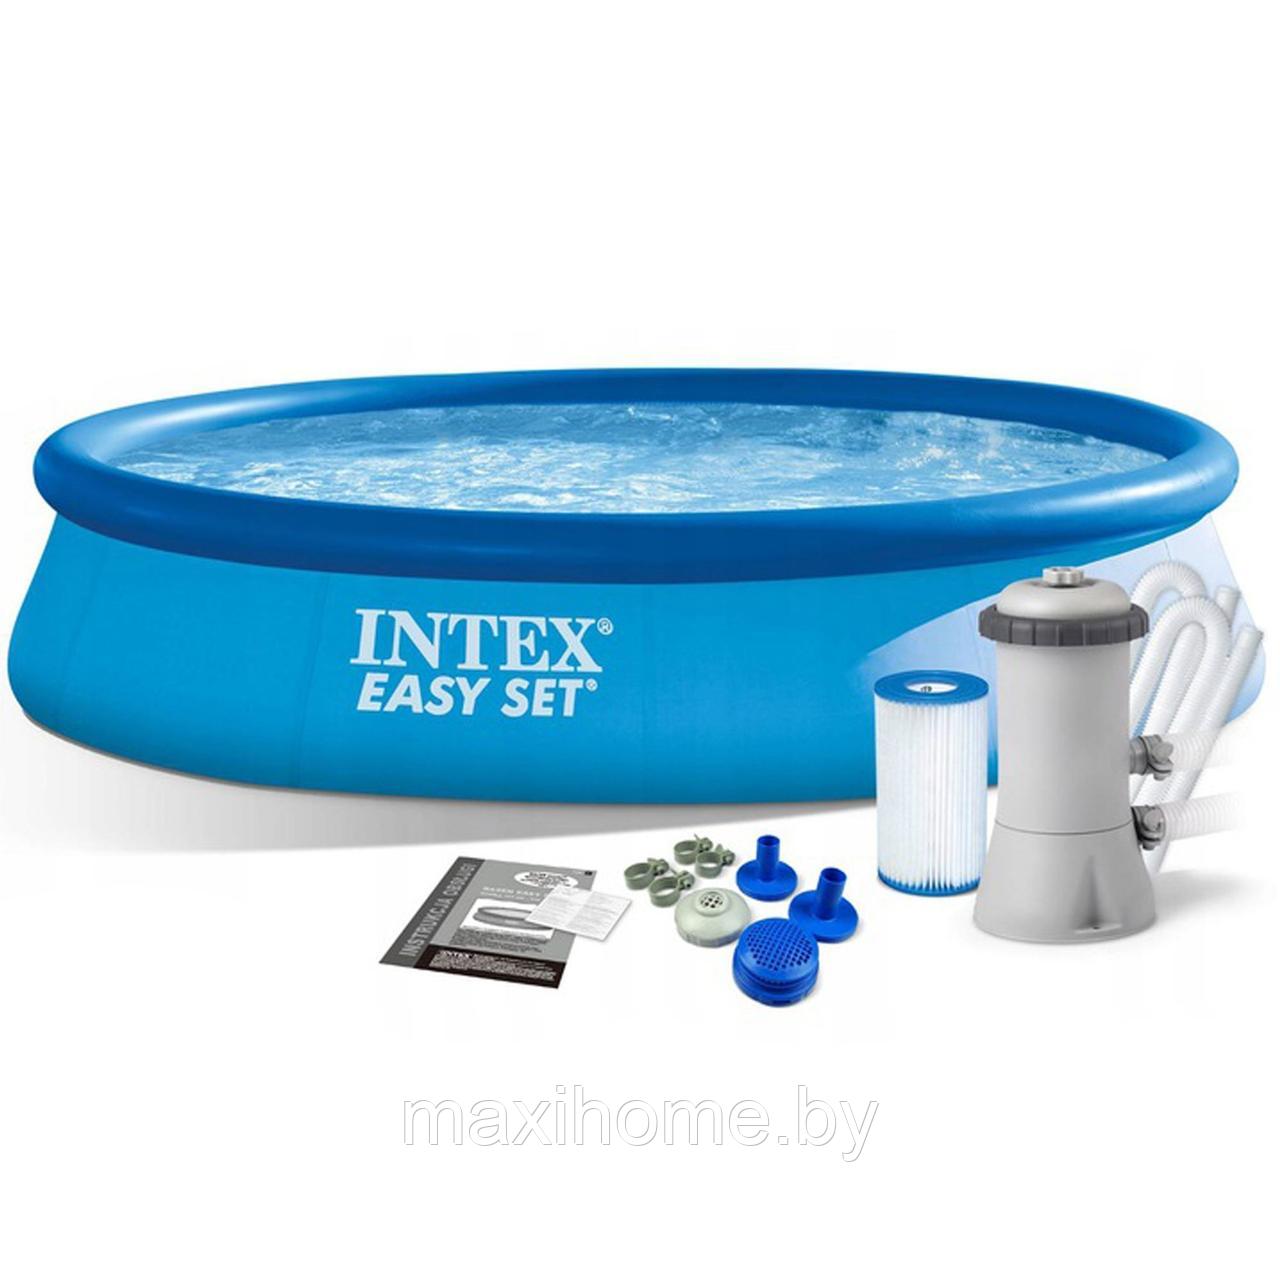 Надувной бассейн Intex Easy Set Pool Set 28142 396x84 см + фильтр-насос и картридж